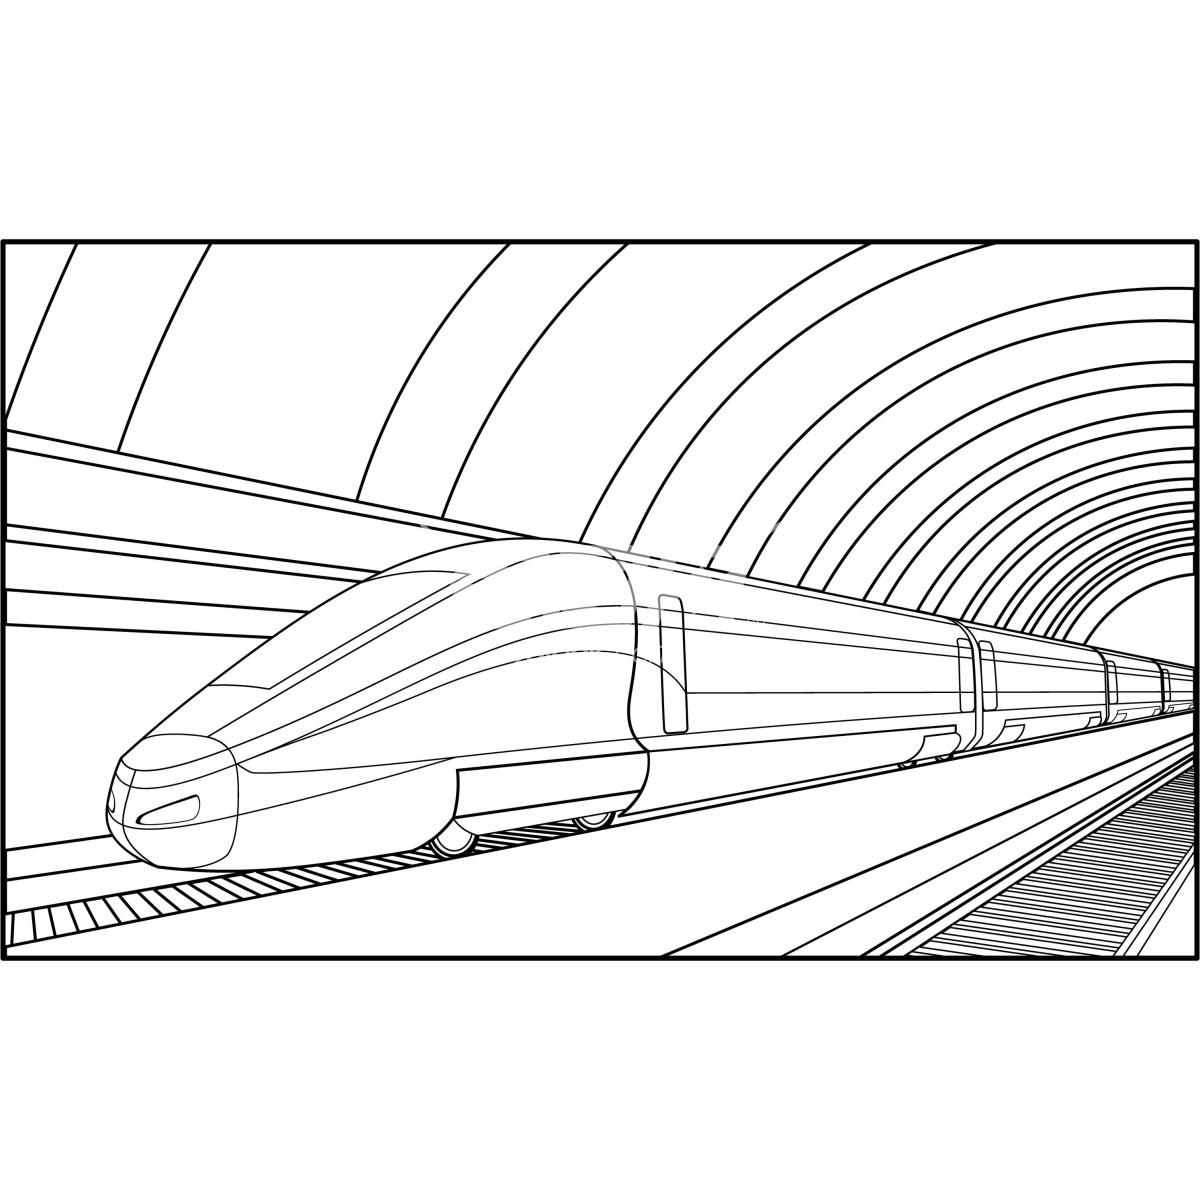 绘制通过隧道的列车